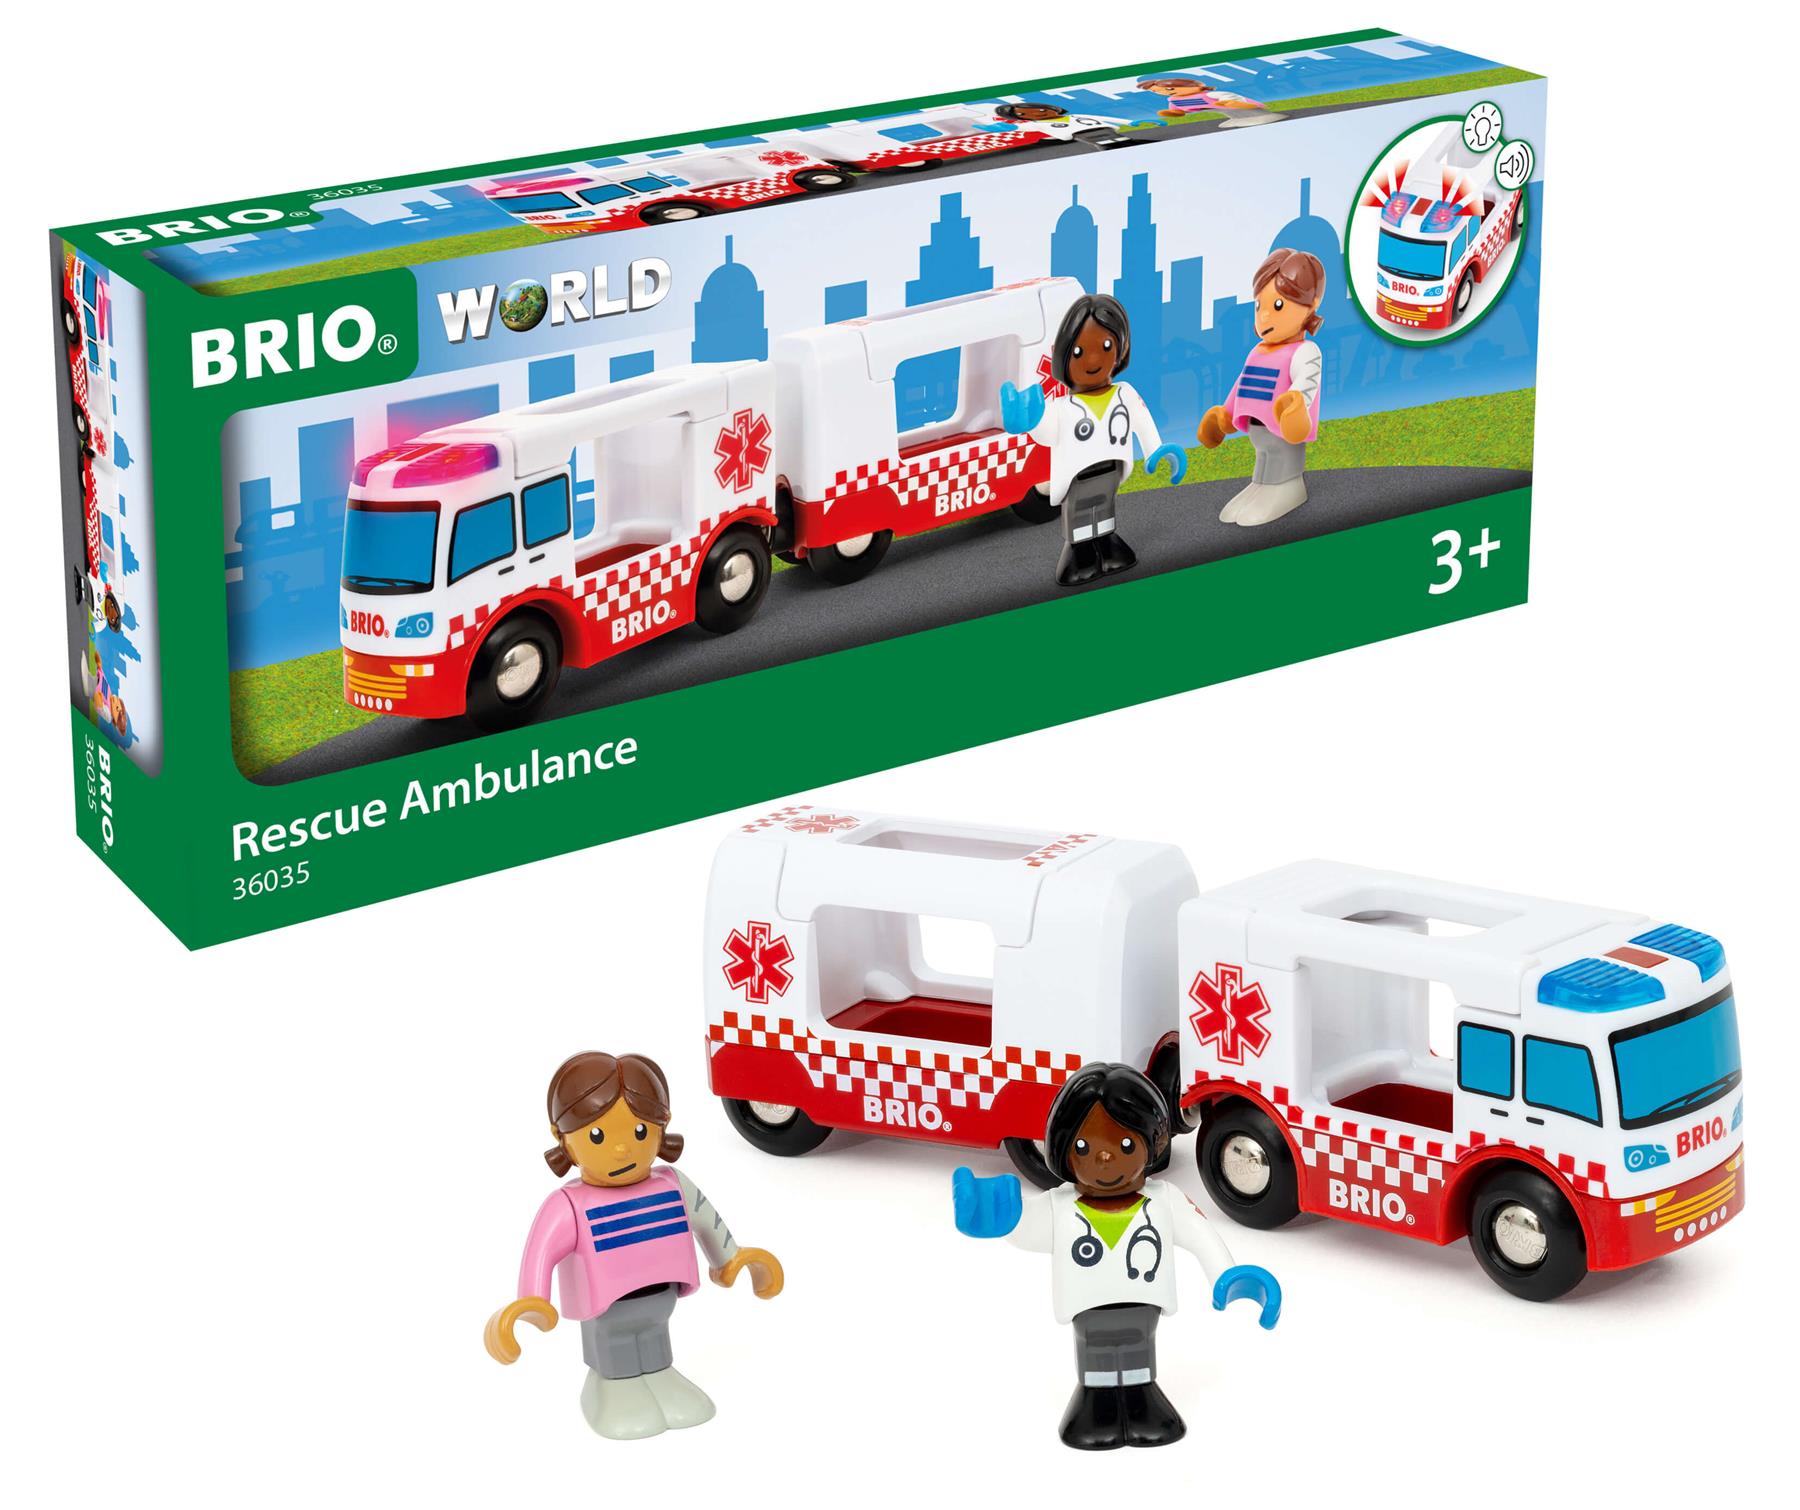 Brio World 36035 Rescue Ambulance